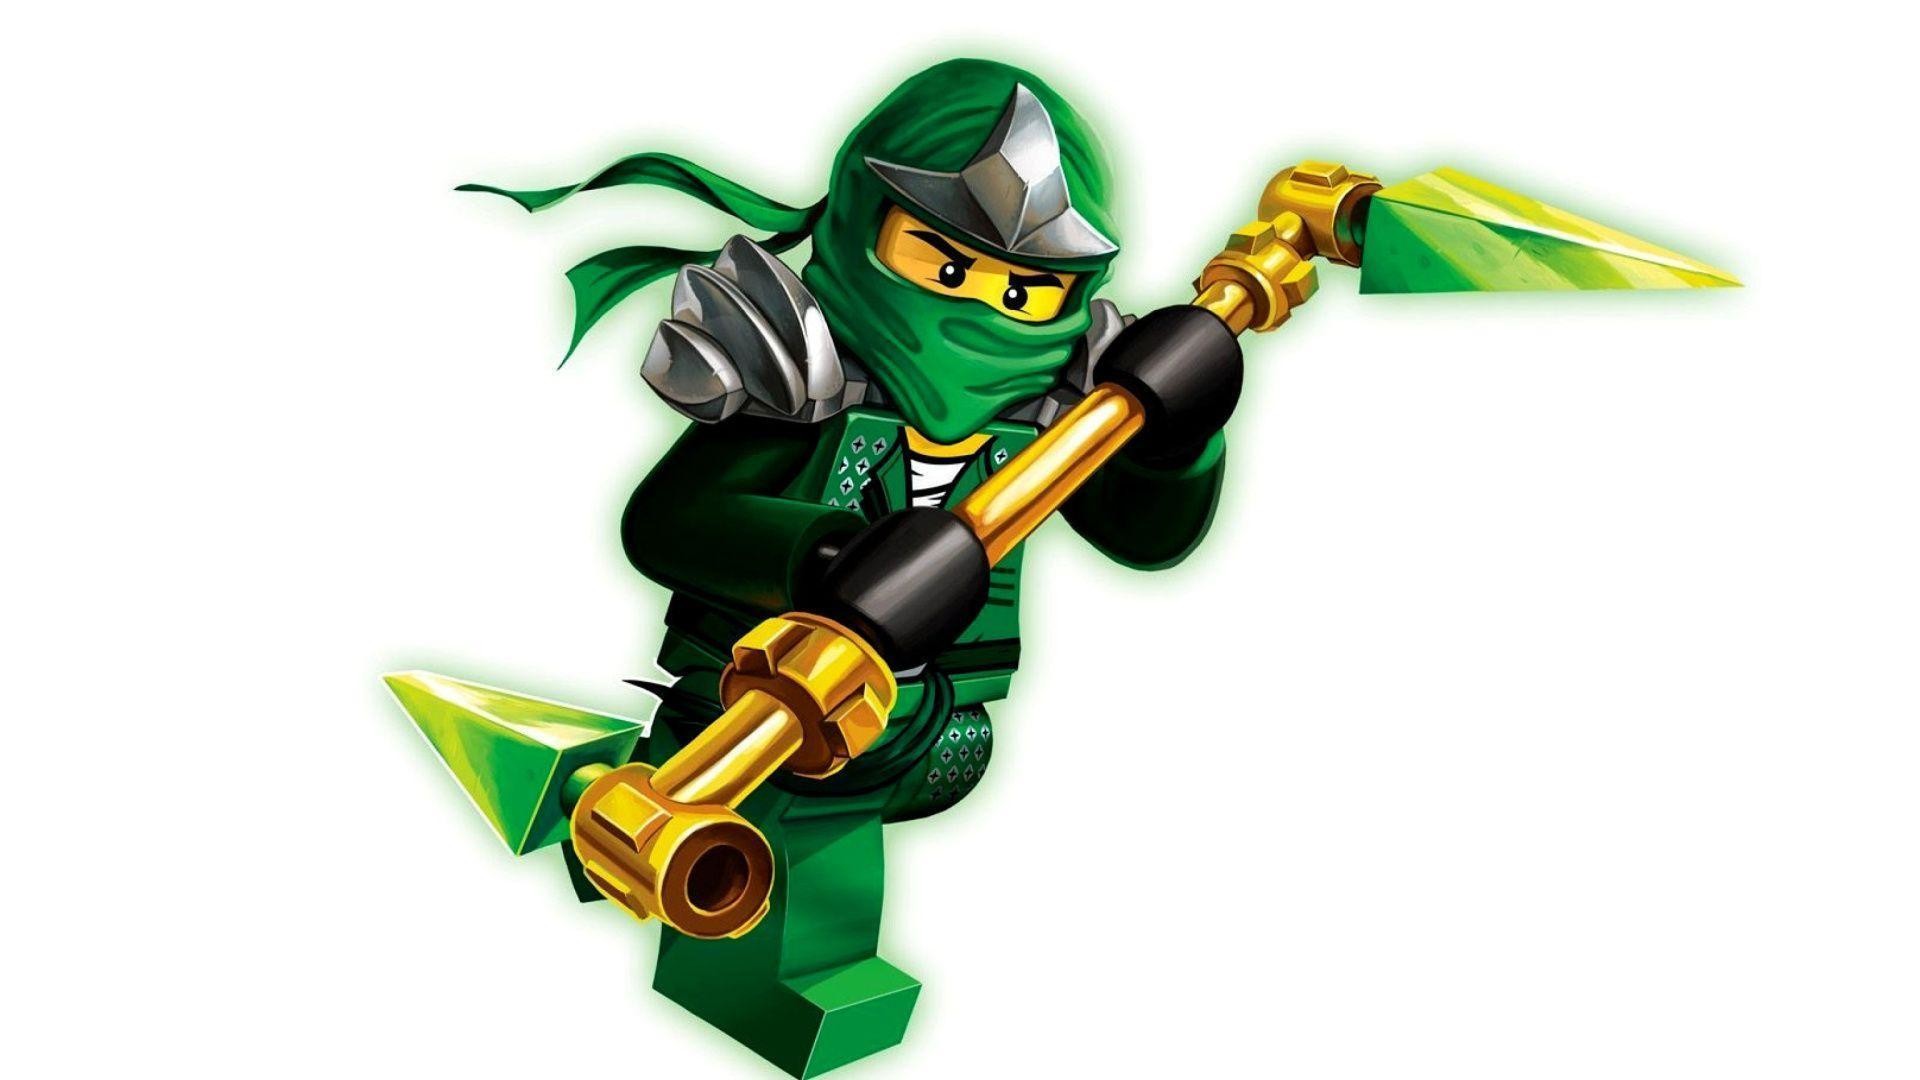 1920x1080 Warner Bros et TT Games annoncent LEGO Ninjago: Nindroids -  http://www.gamerslife.fr/actus/warner-bros-tt-games-annoncent-lego-ninjago-nindroids/  ...